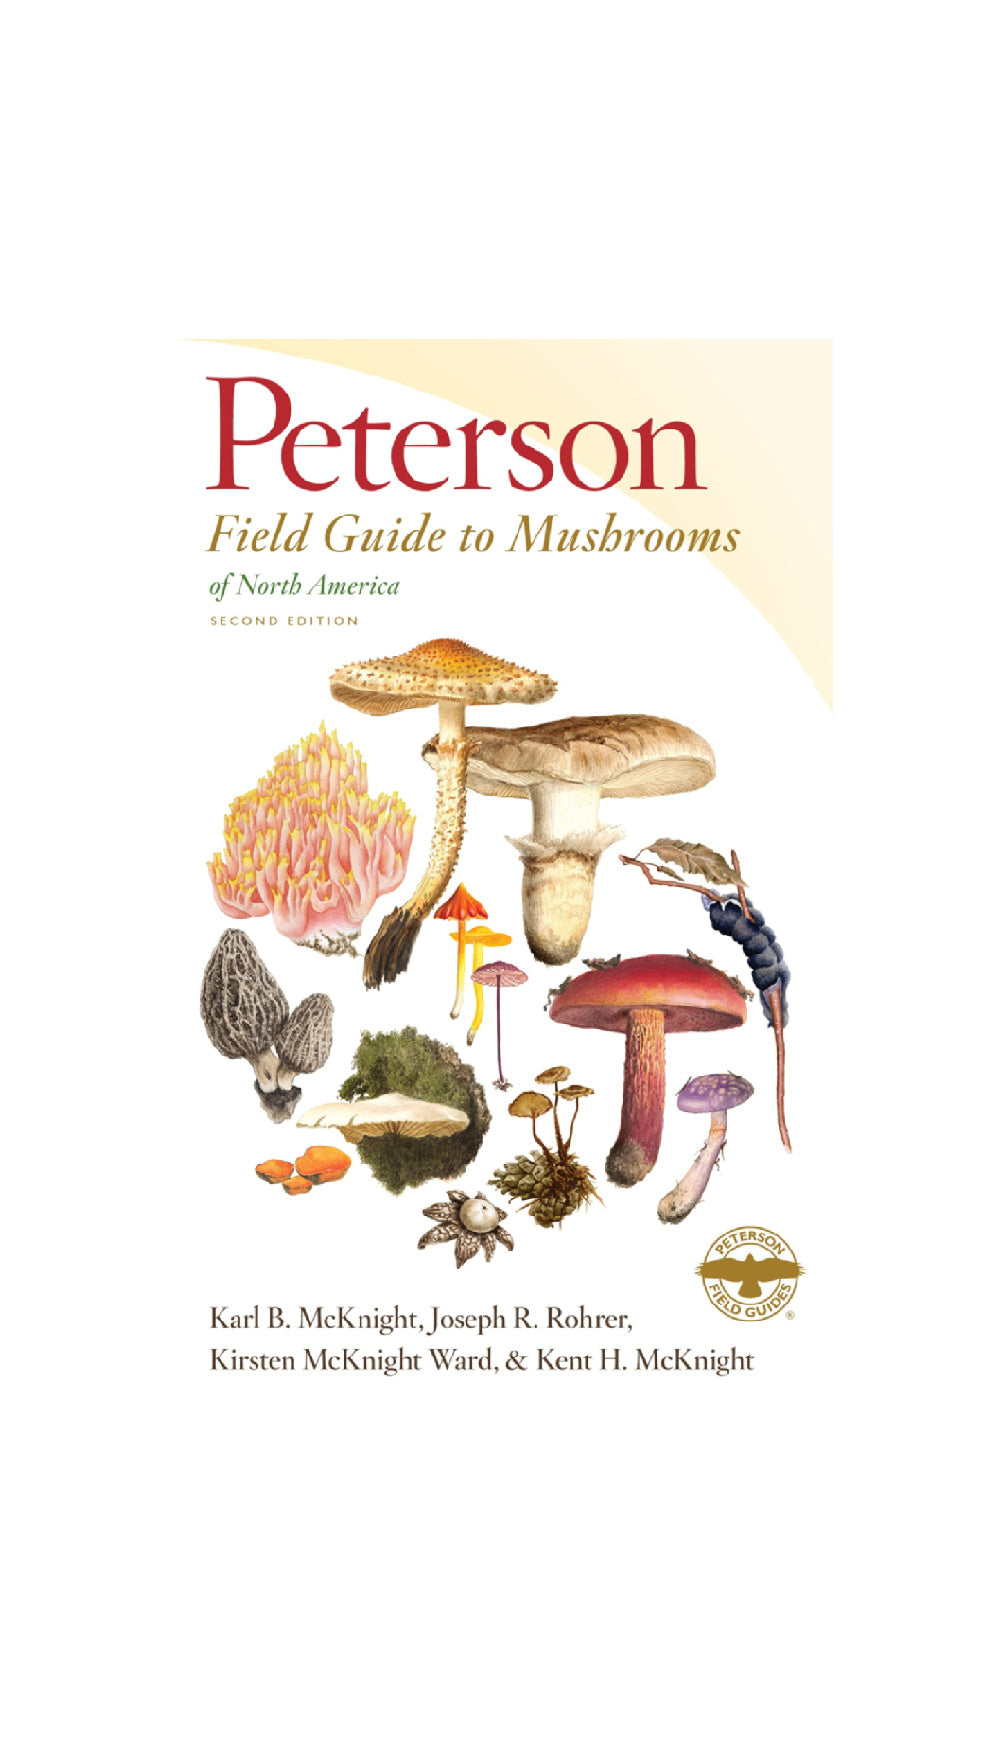 Peterson Field Guide to Mushrooms / KARL B. MCKNIGHT